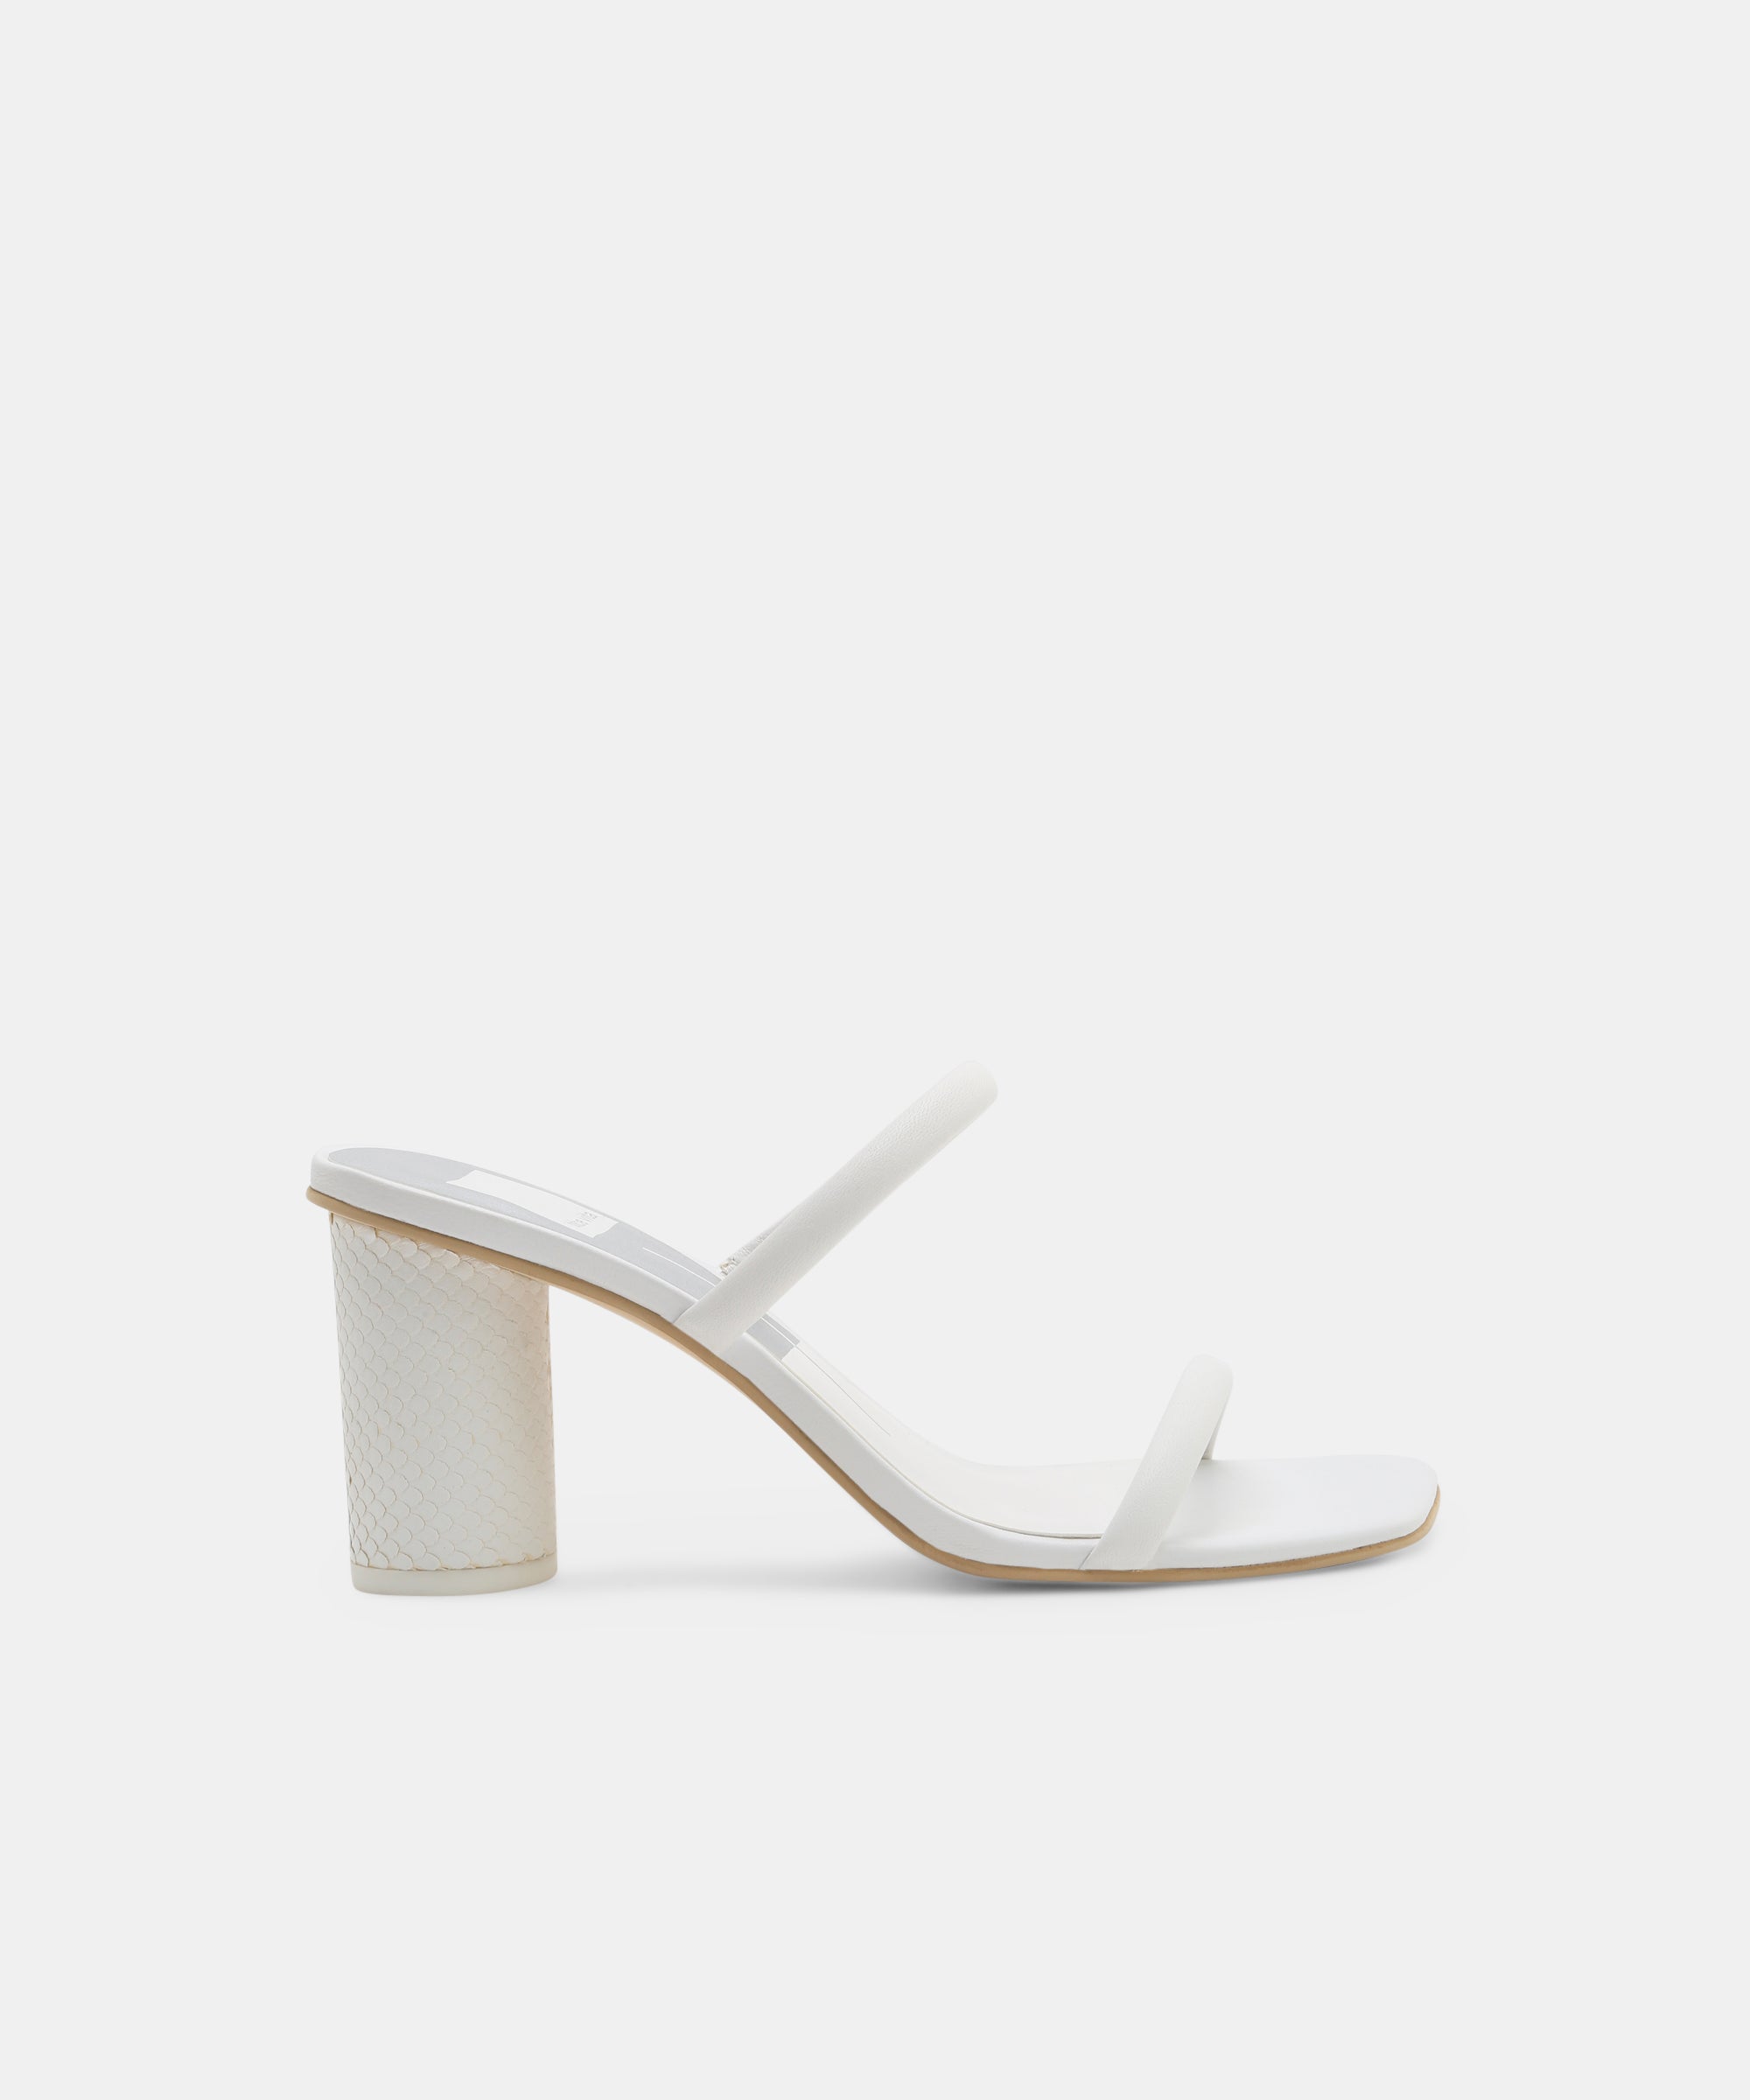 Buy White Women's Sandals - The Rachel White | Tresmode